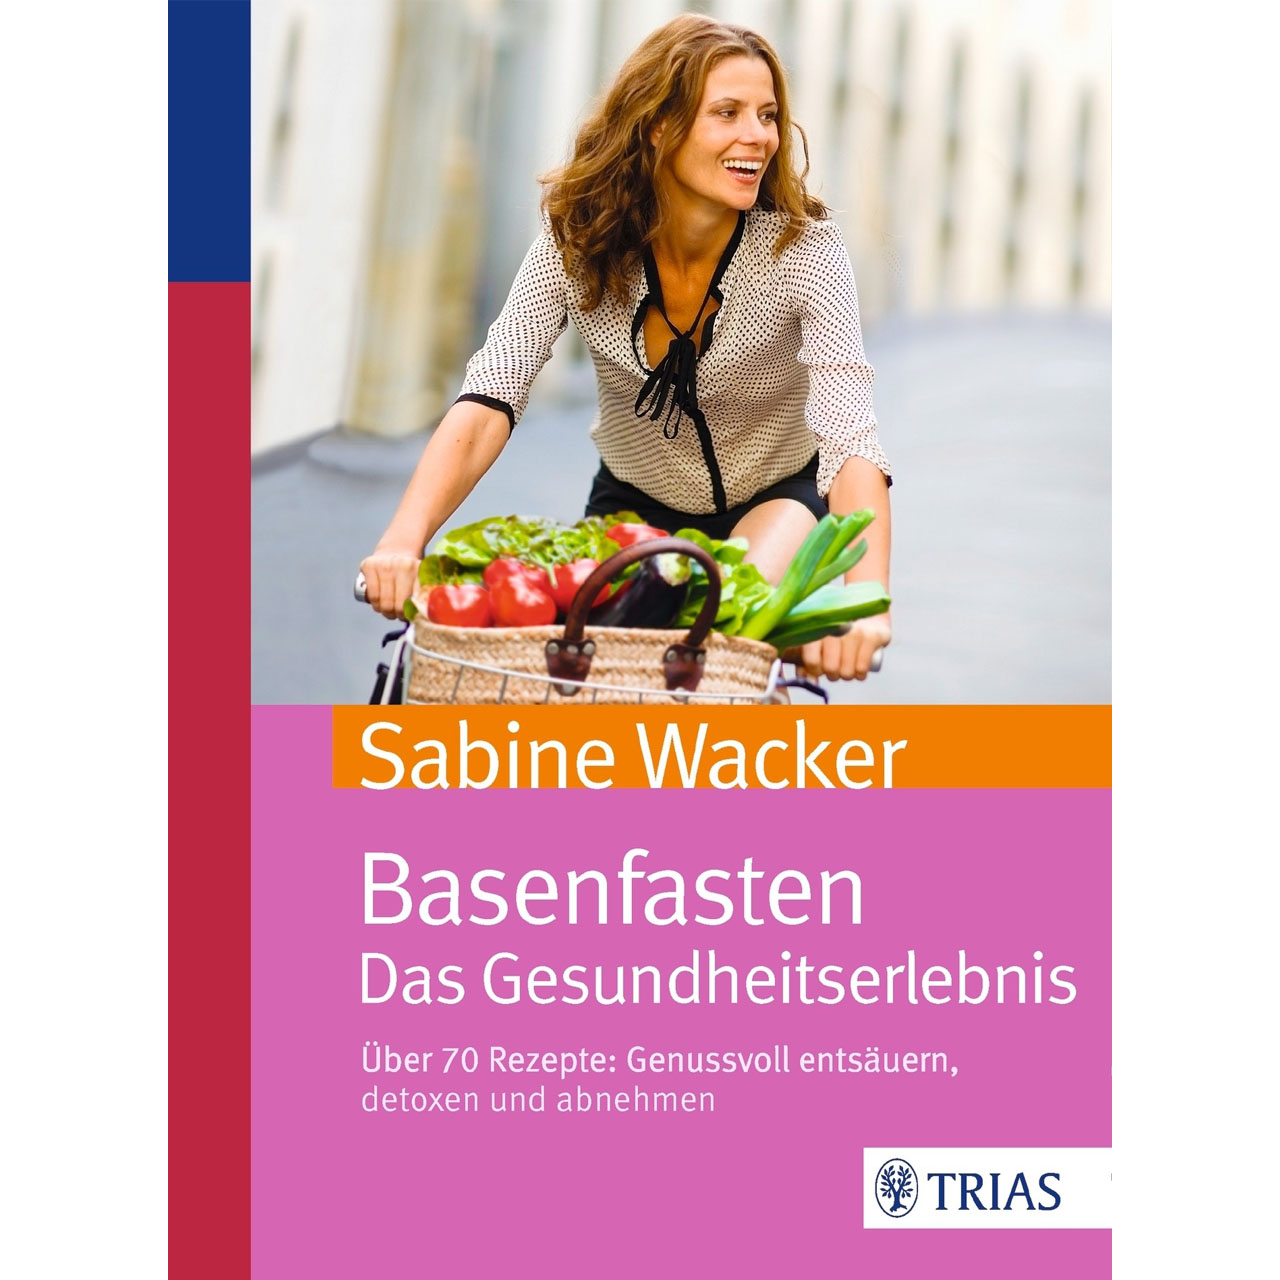 basenfasten - das Gesundheitserlebnis von Sabine Wacker, TRIAS-Verlag